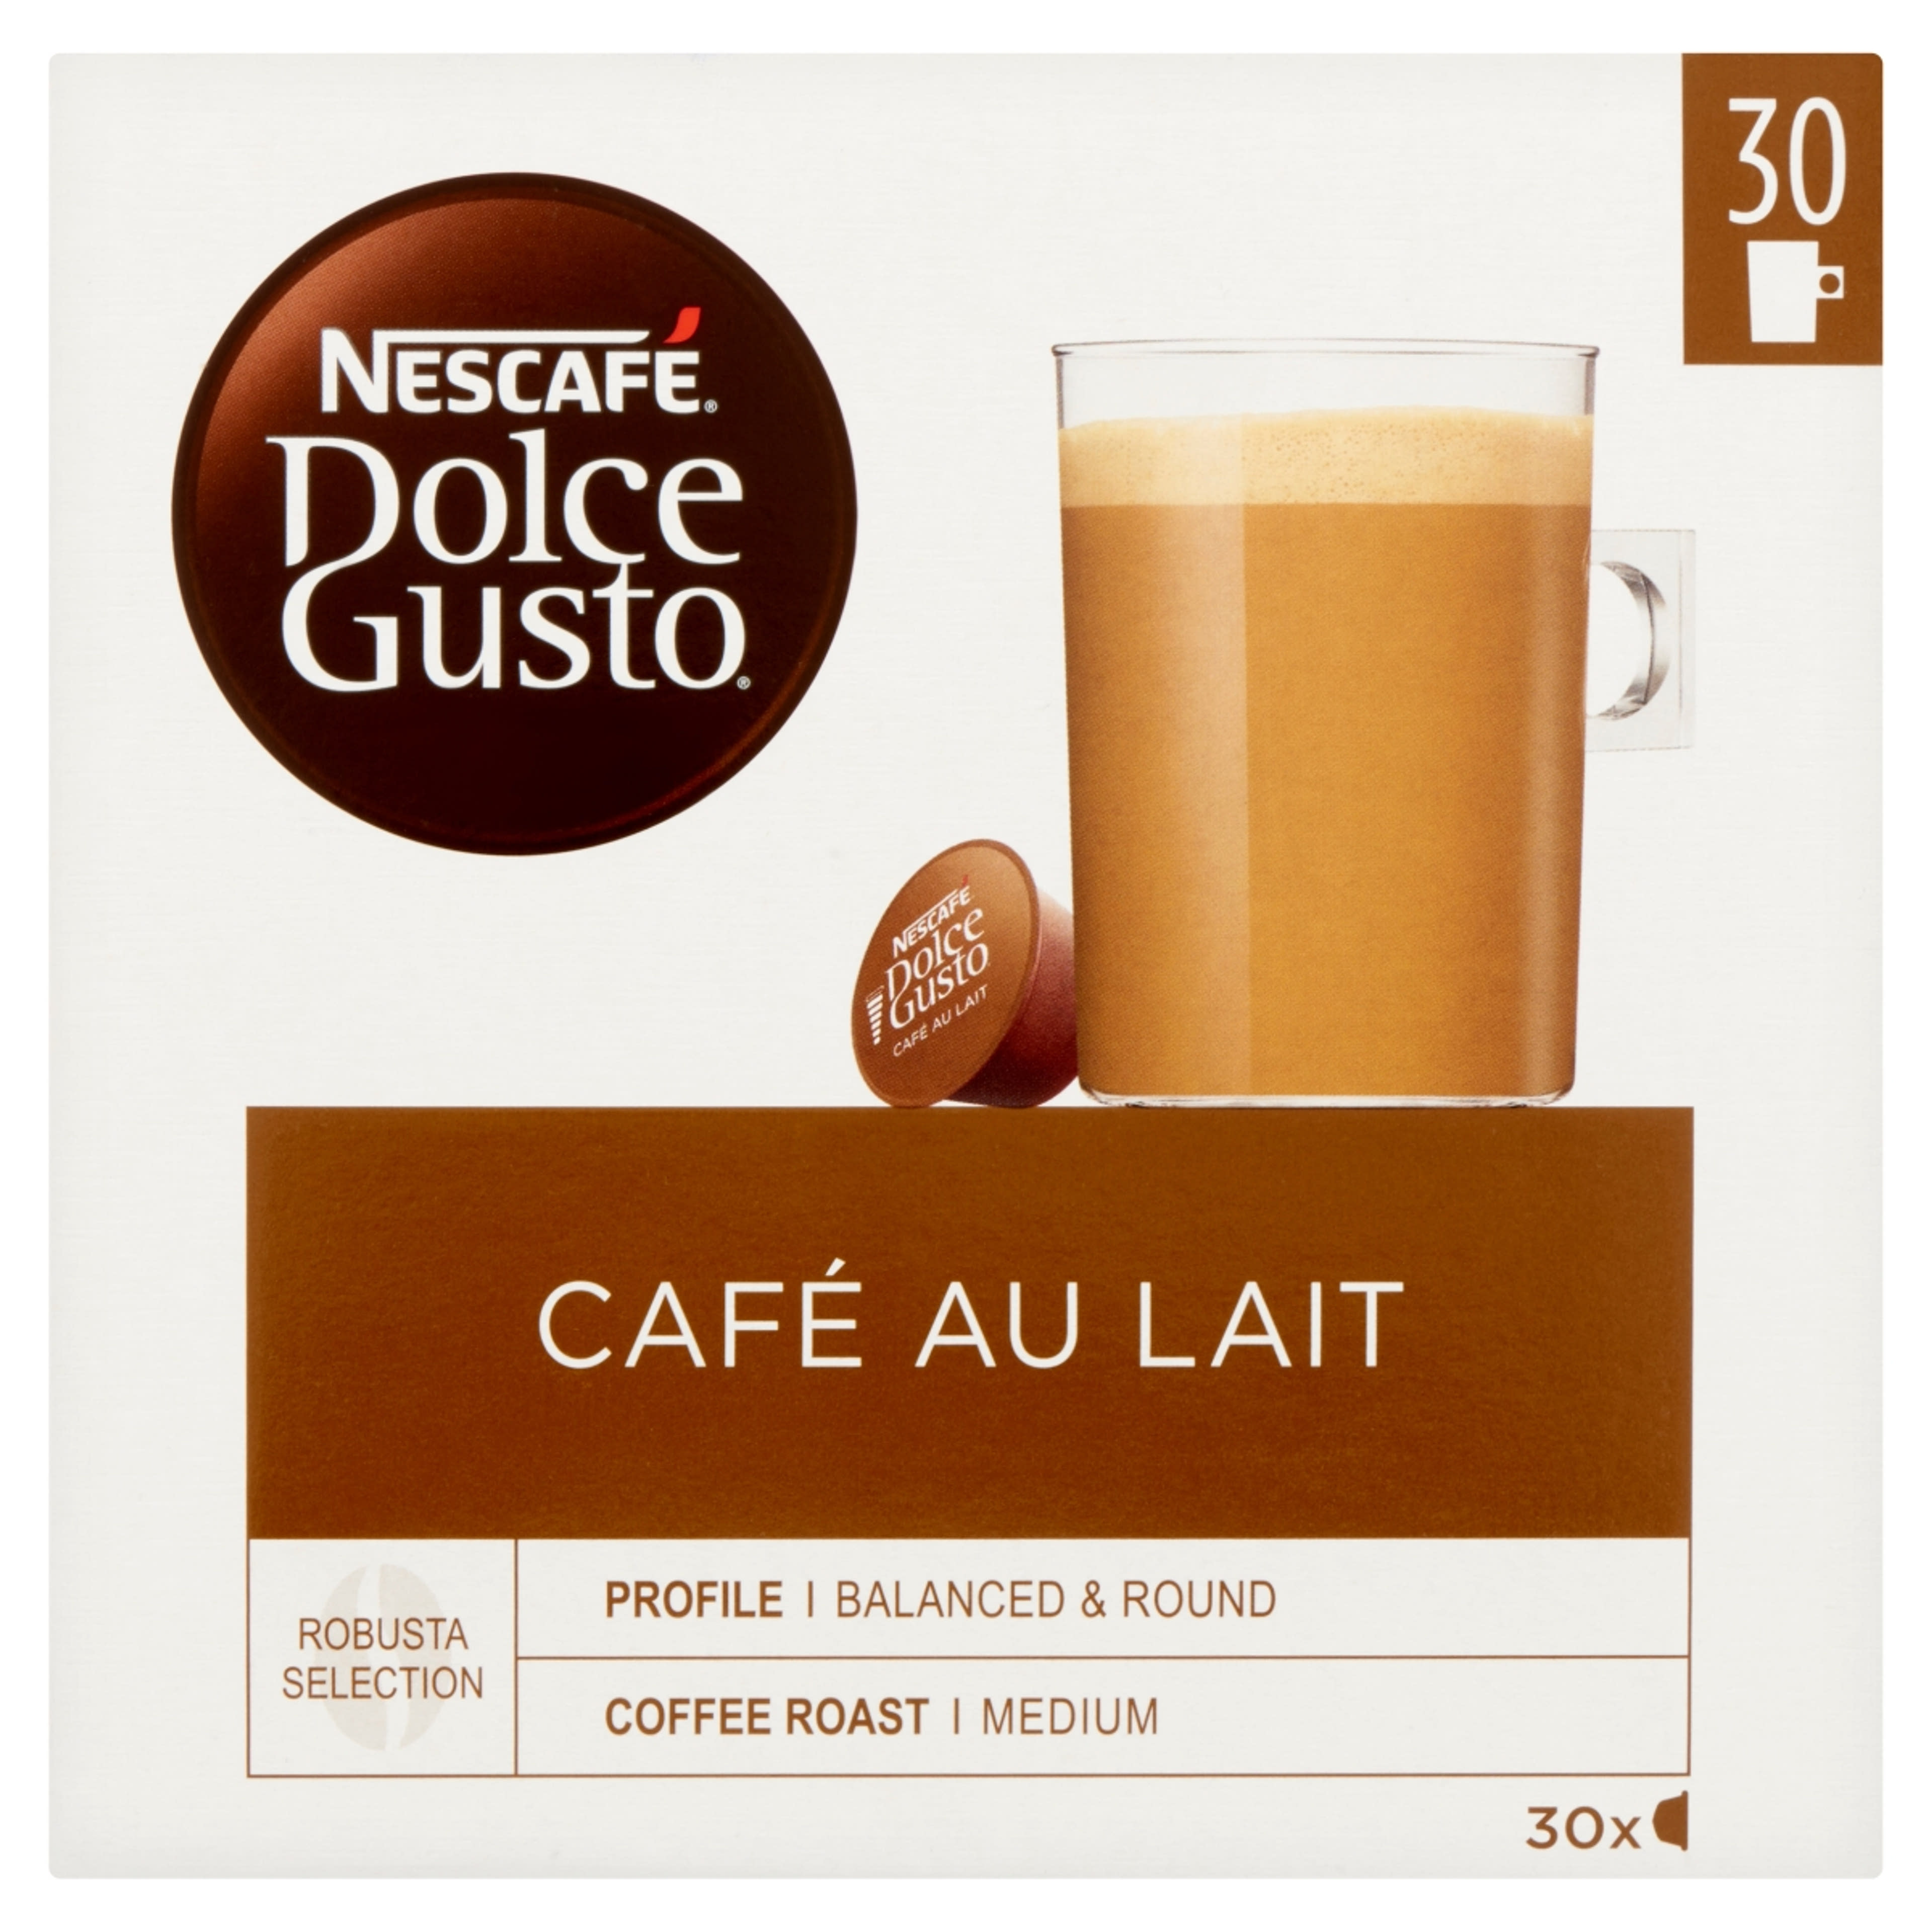 Nescafe Dolce Gusto cafe aulait 30 db kapszula - 300 g-1